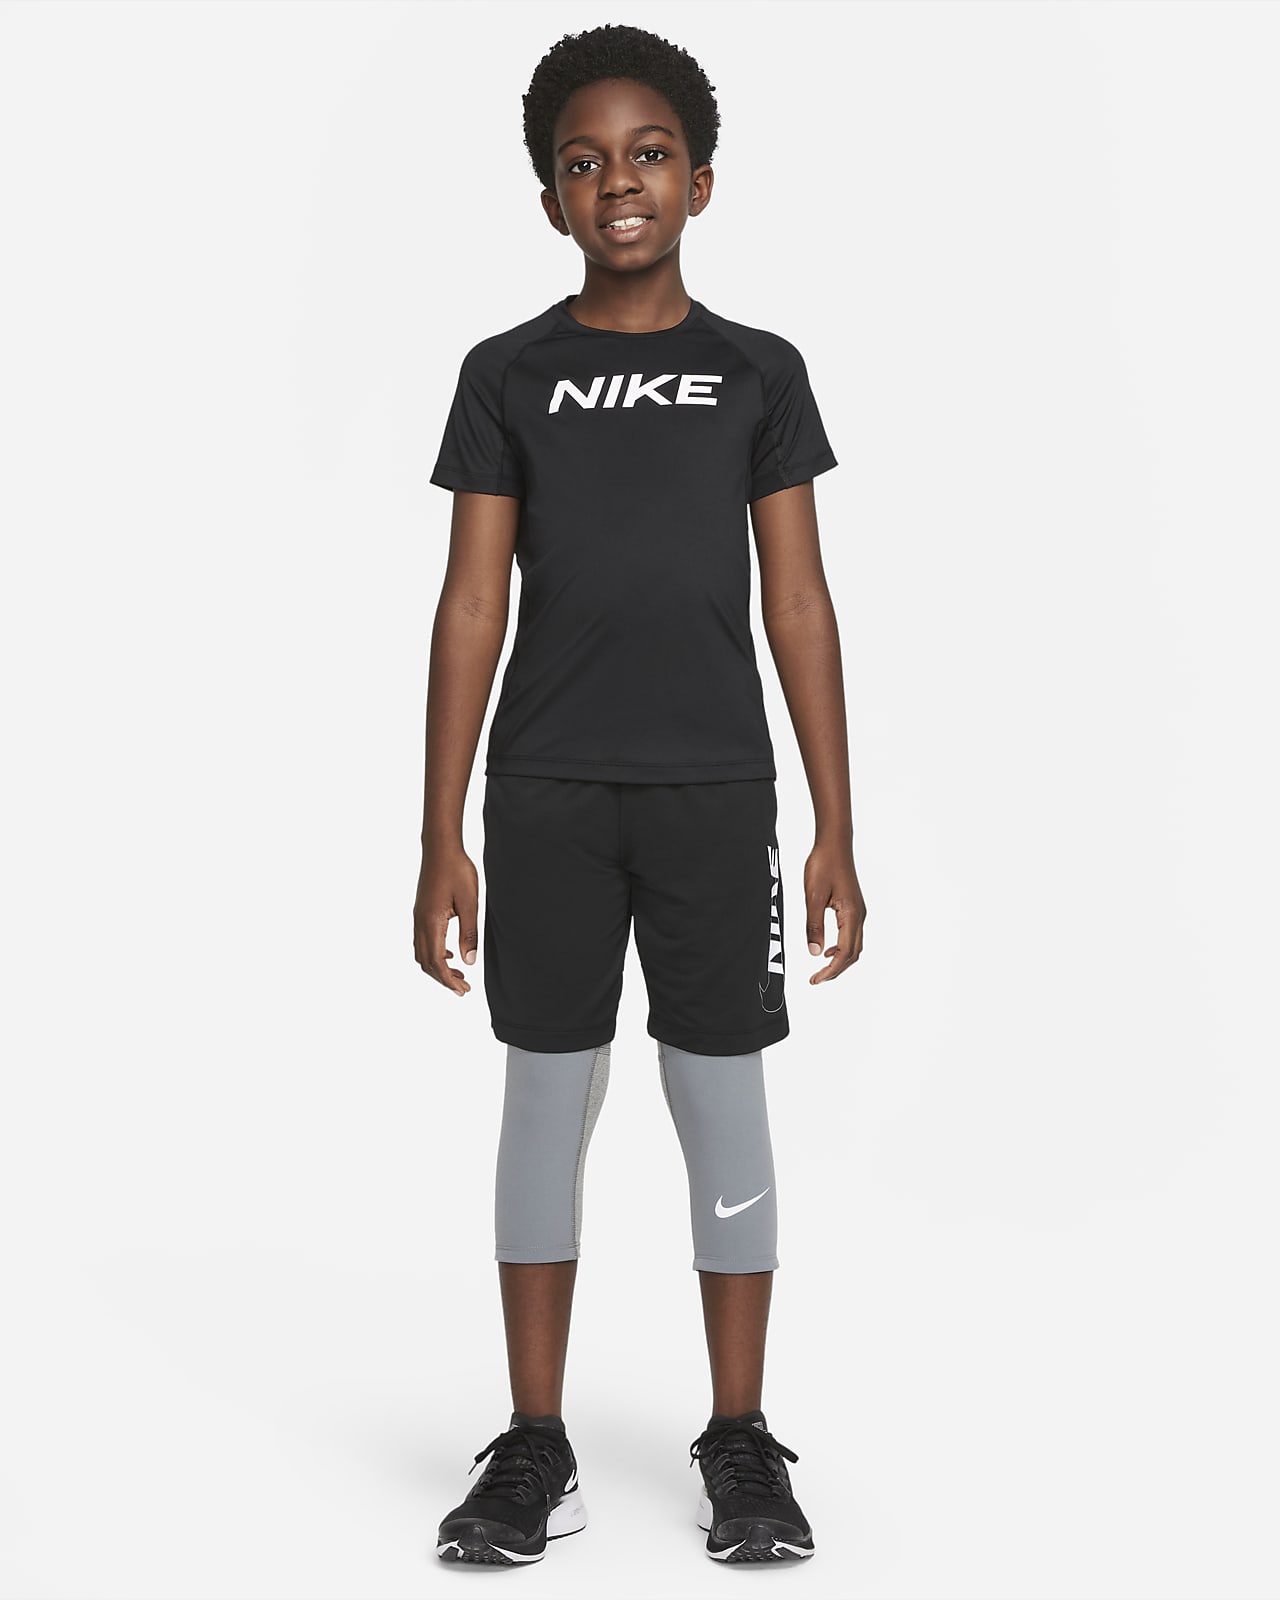 Nike Leggings for Men, Women & Kids